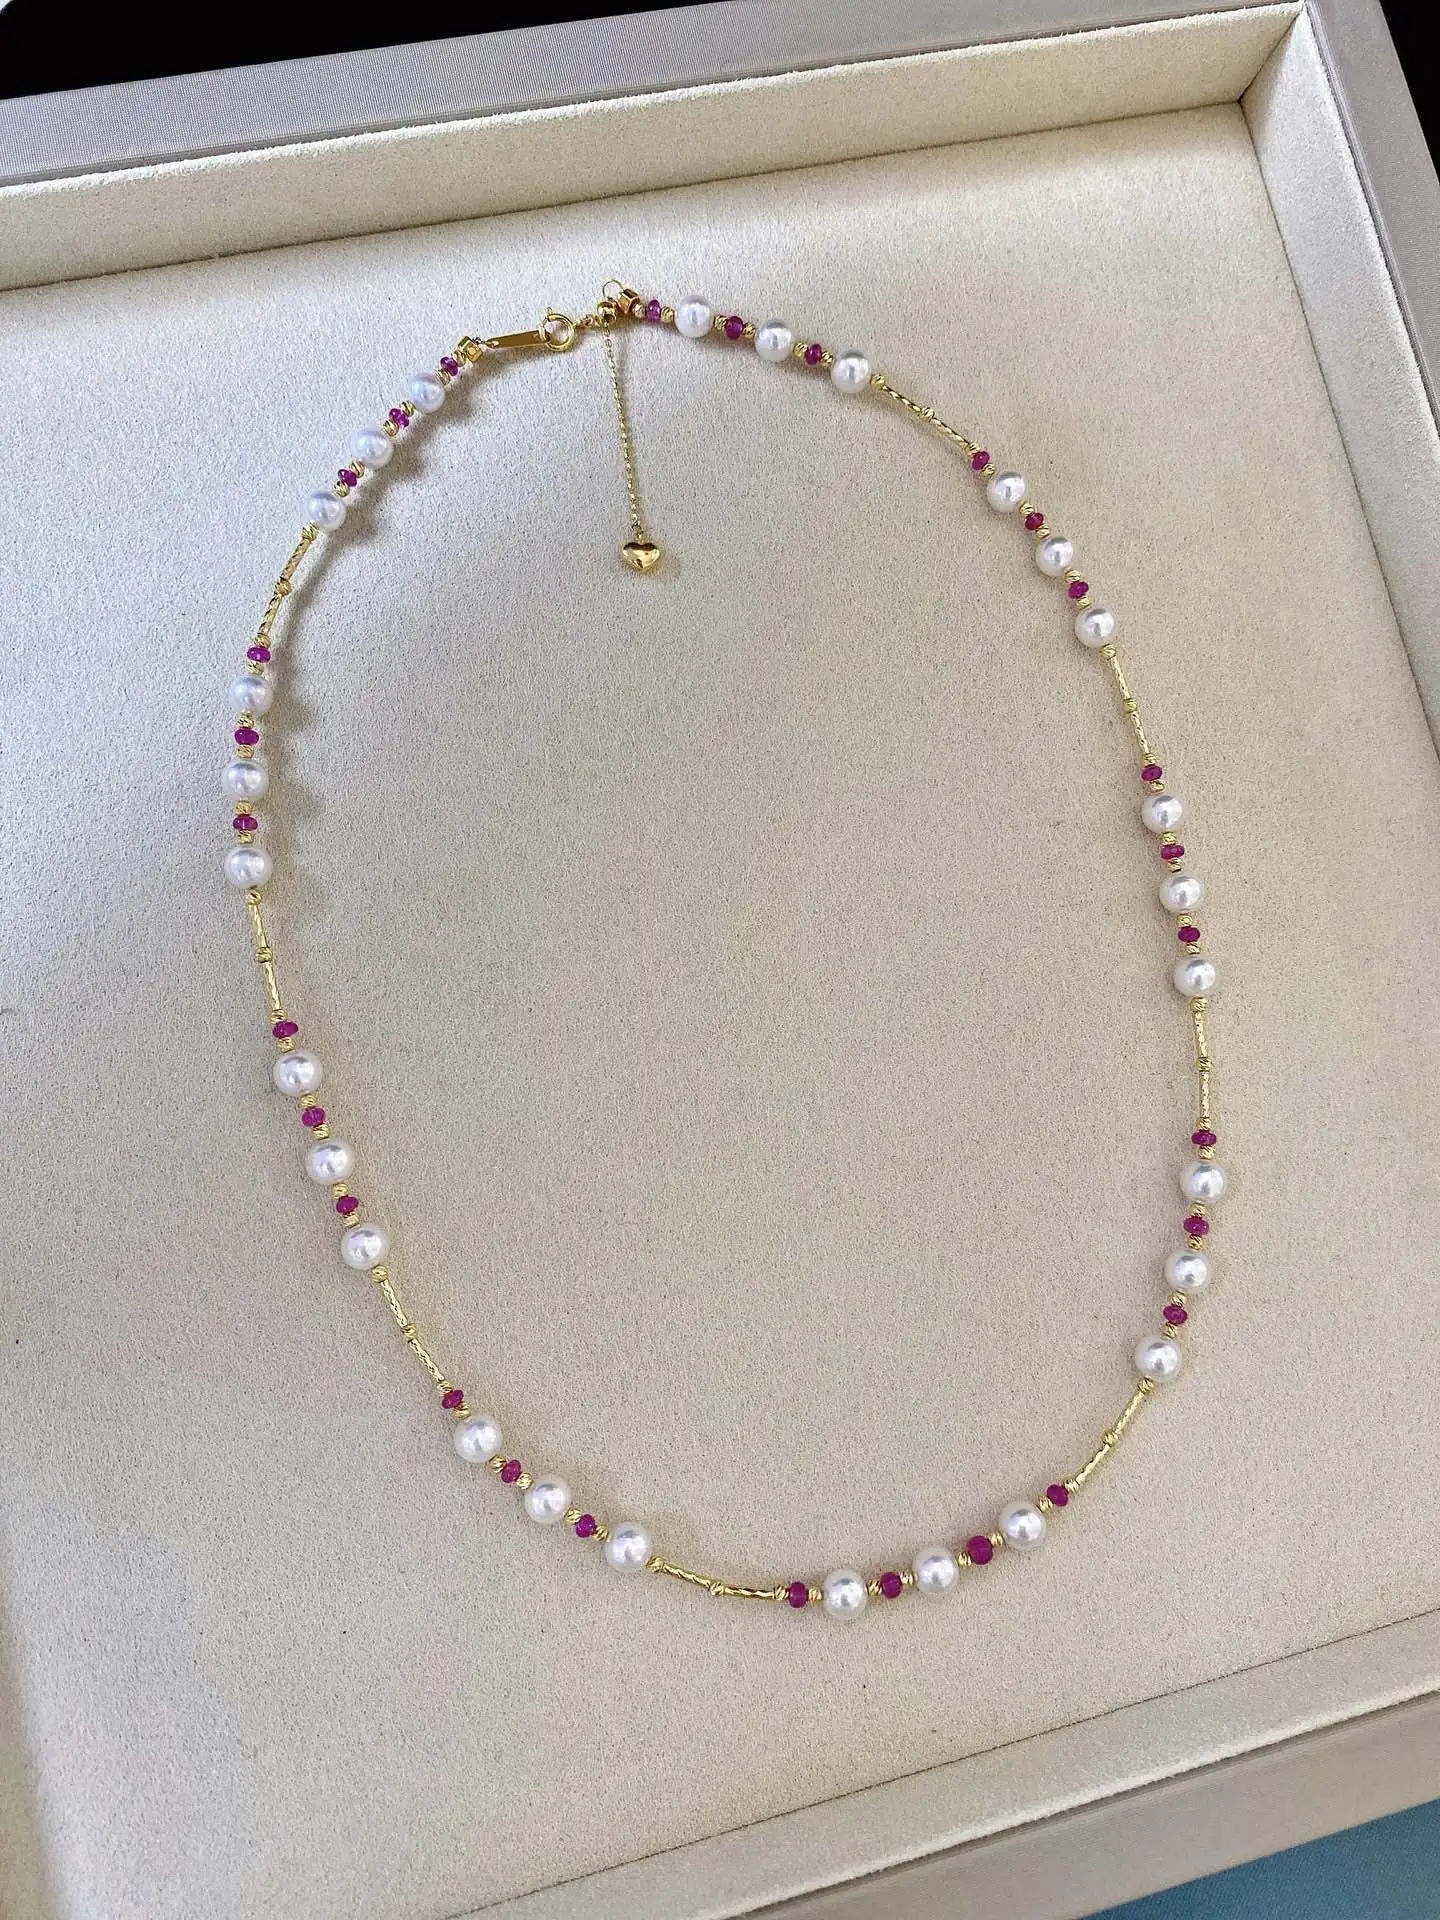 【akoya红宝石珍珠项链】
新款，红宝石搭配akoya珍珠，颜色艳丽多彩，搭配的红宝石是缅甸红宝，